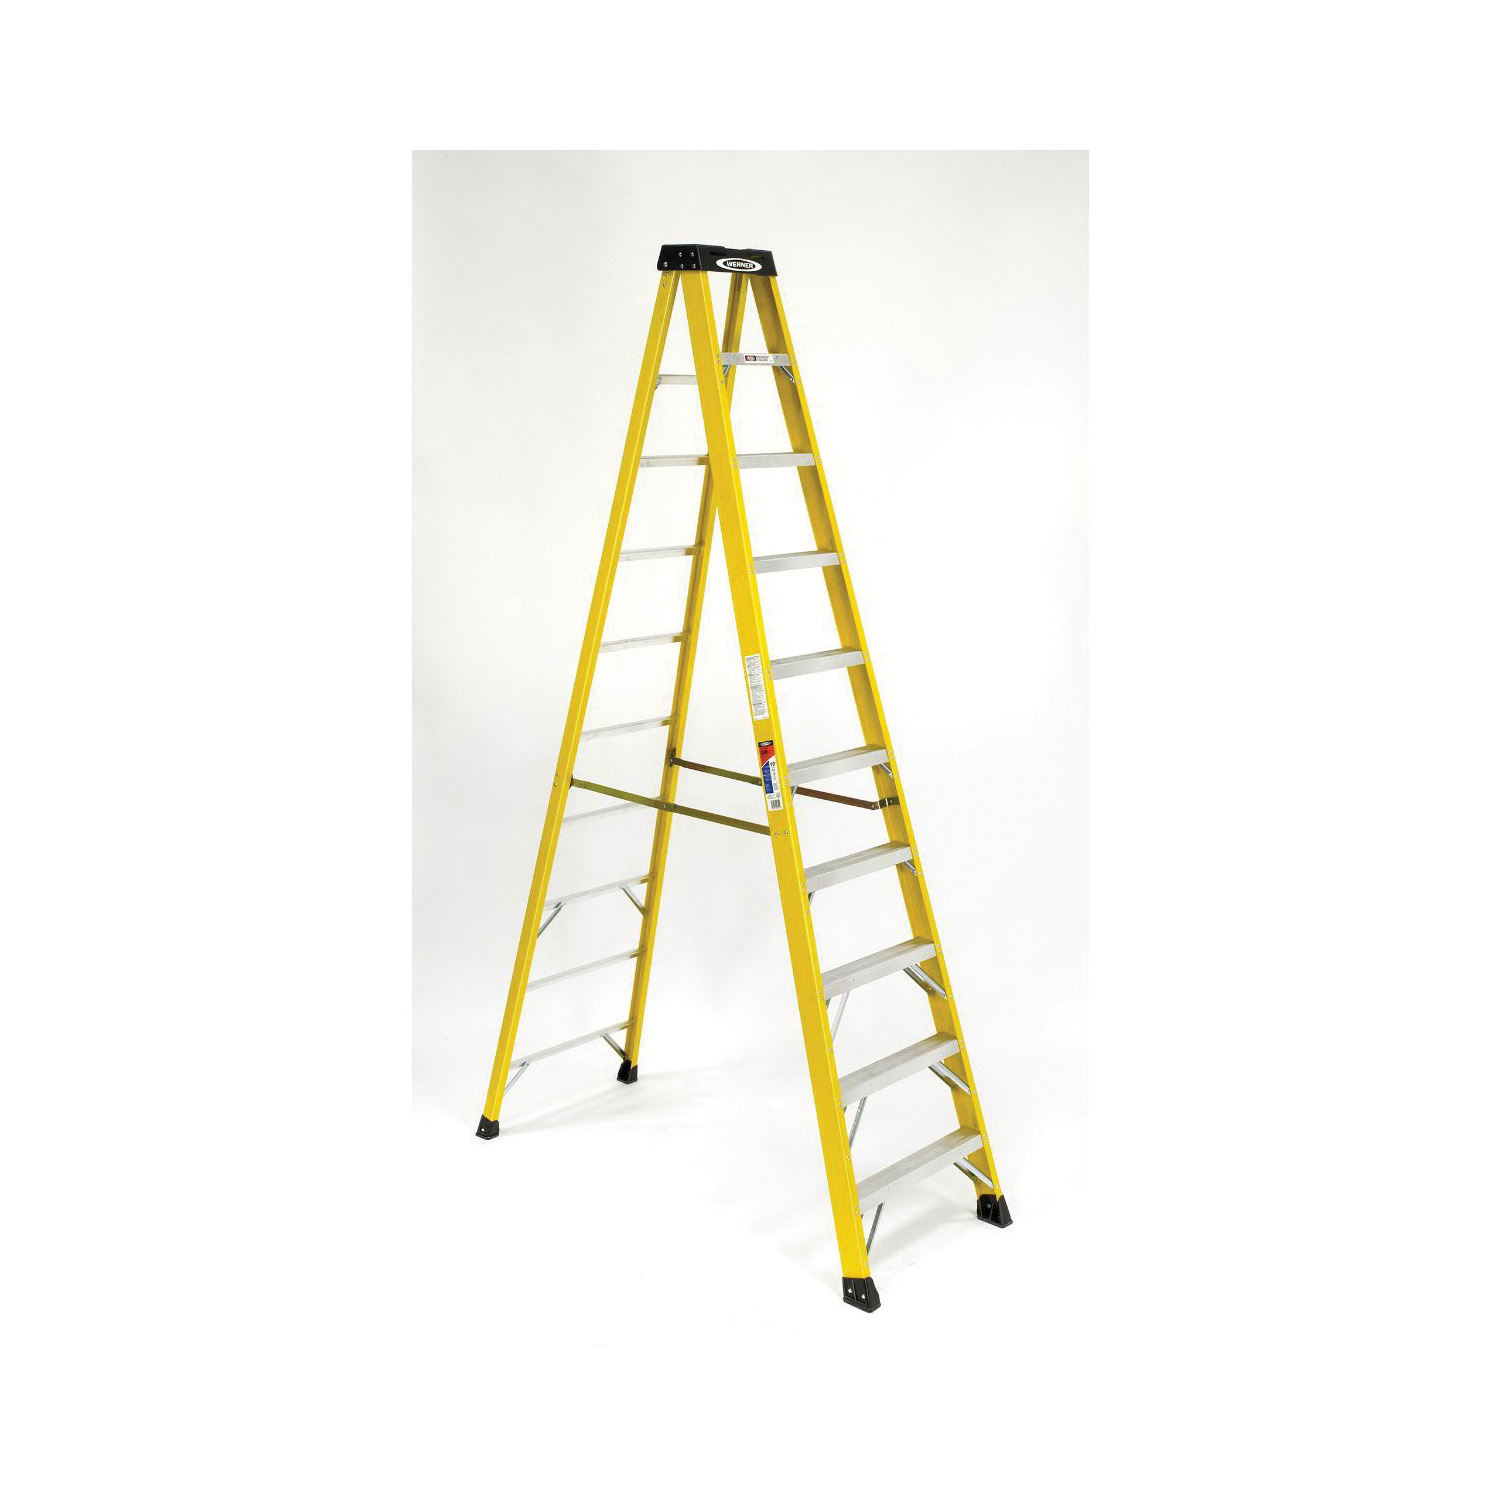 WERNER® 6008 6000 Type I Single Sided Step Ladder, 8 ft H Ladder, 250 lb Load, 7 Steps, Fiberglass